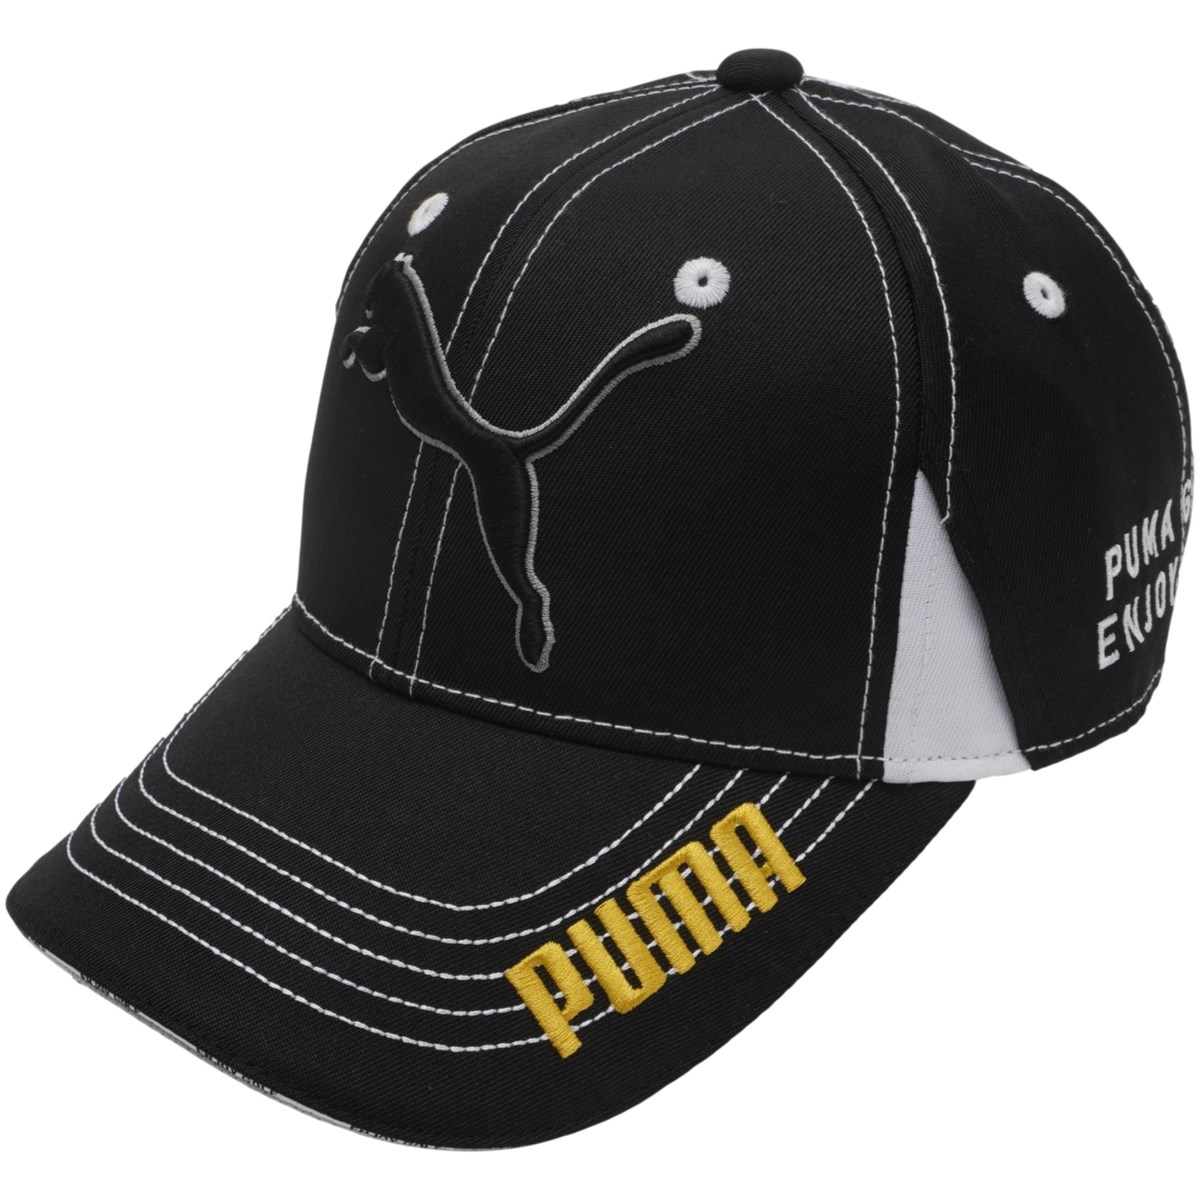 [アウトレット] [在庫限りのお買い得商品] プーマ PUMA W ツアーラウンドキャップ プーマ ブラック 01 レディース ゴルフウェア 帽子